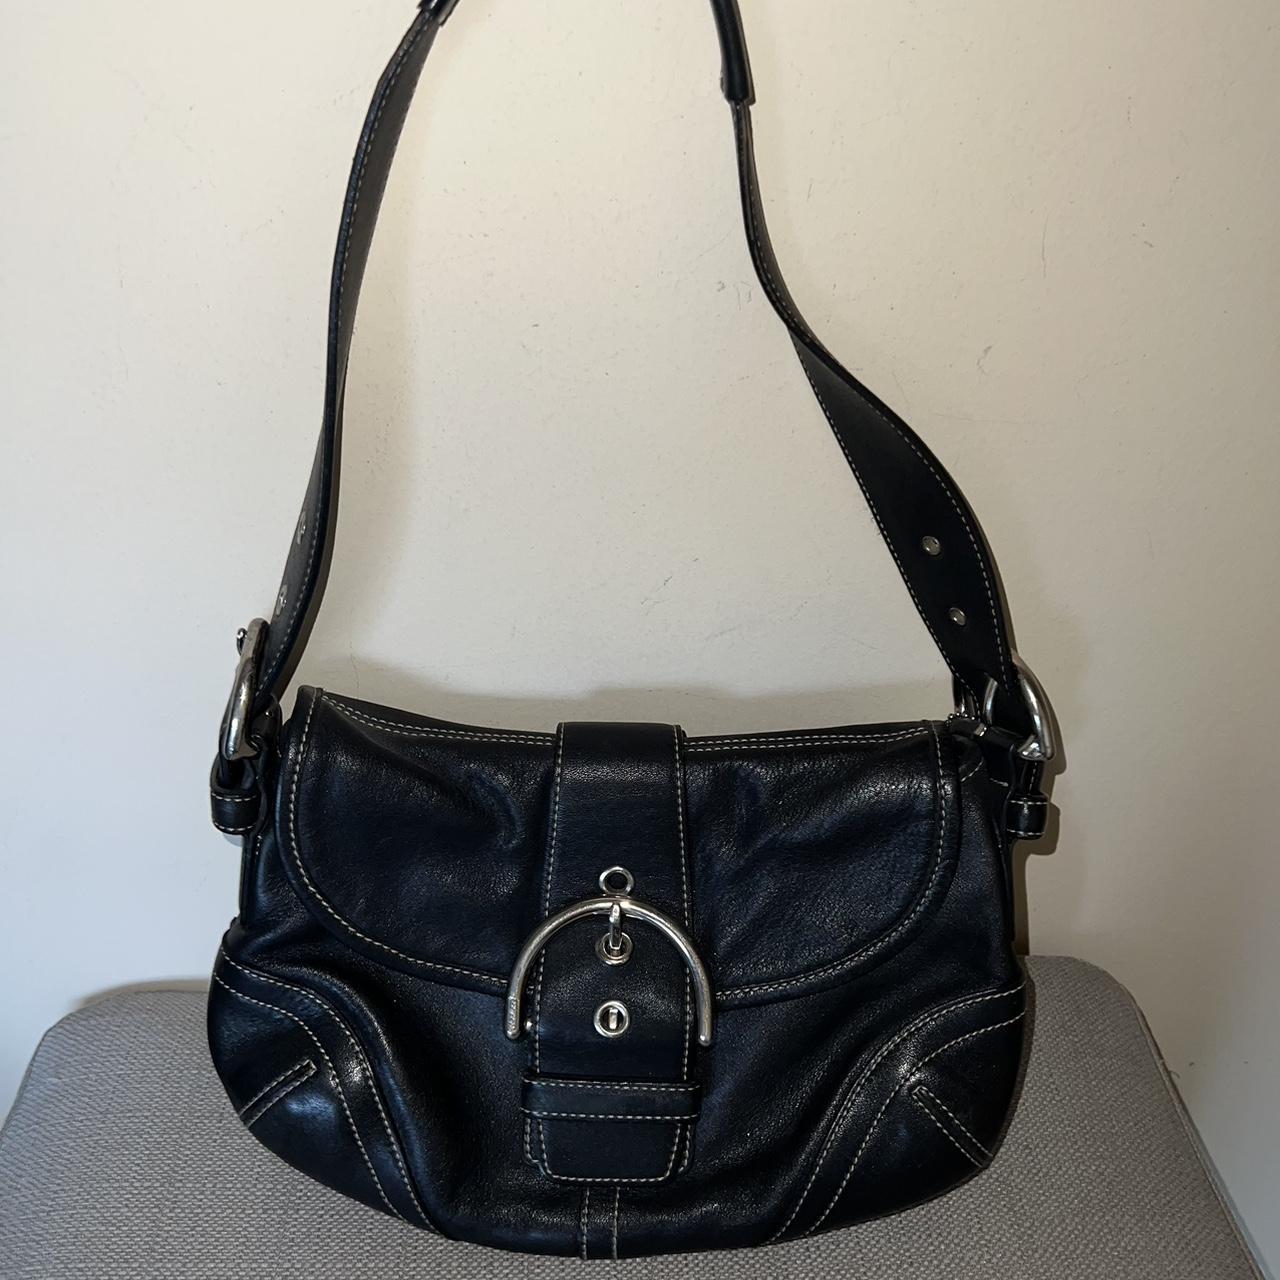 Vintage Coach Soho Flap Bag Same bag sold on Coach - Depop